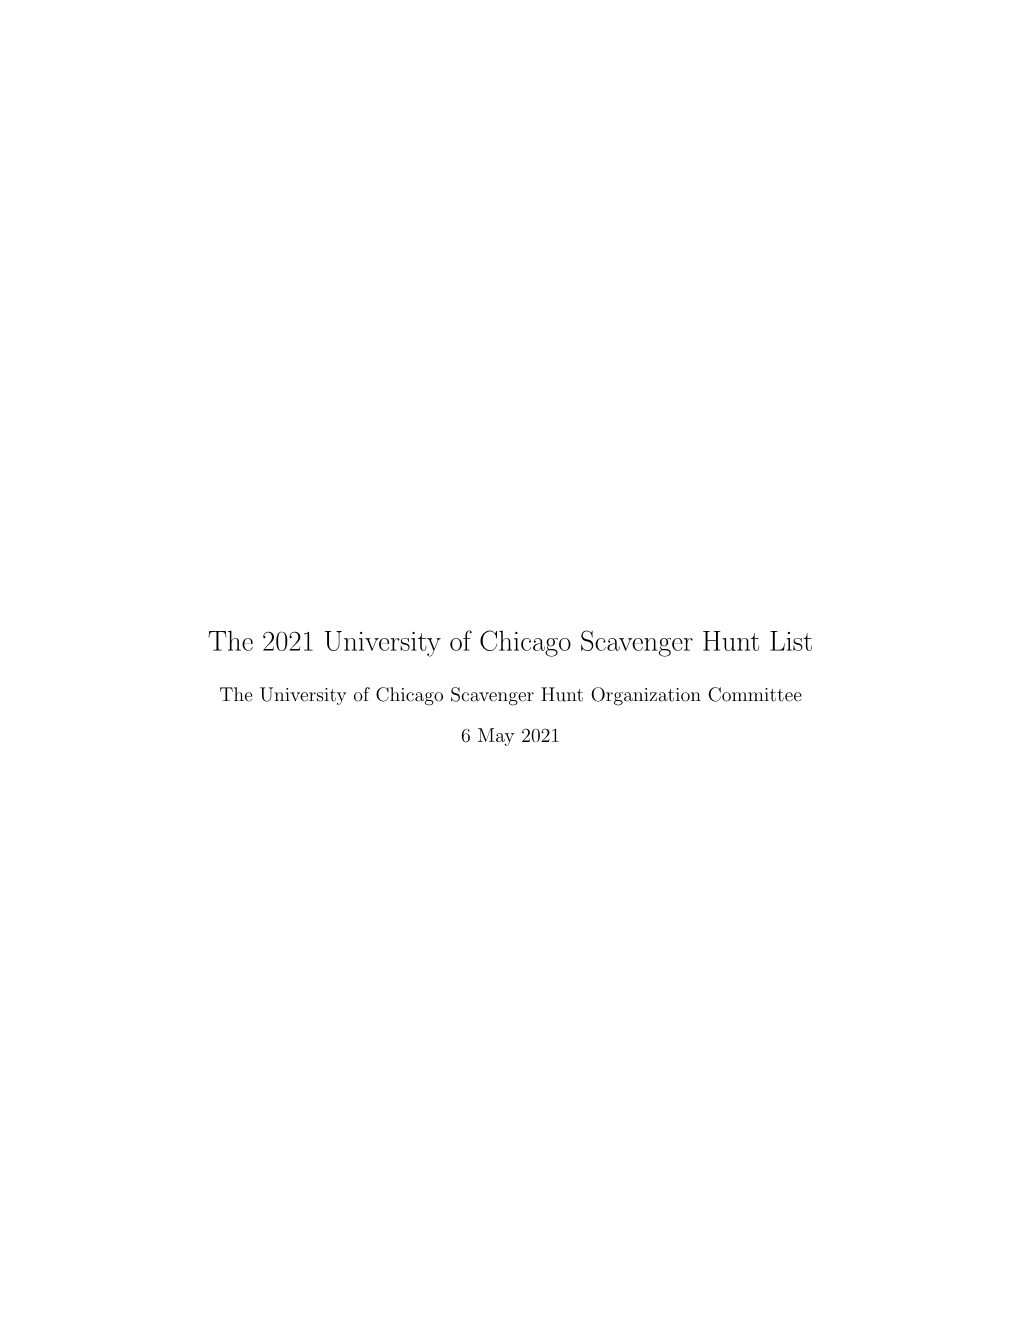 The 2021 University of Chicago Scavenger Hunt List